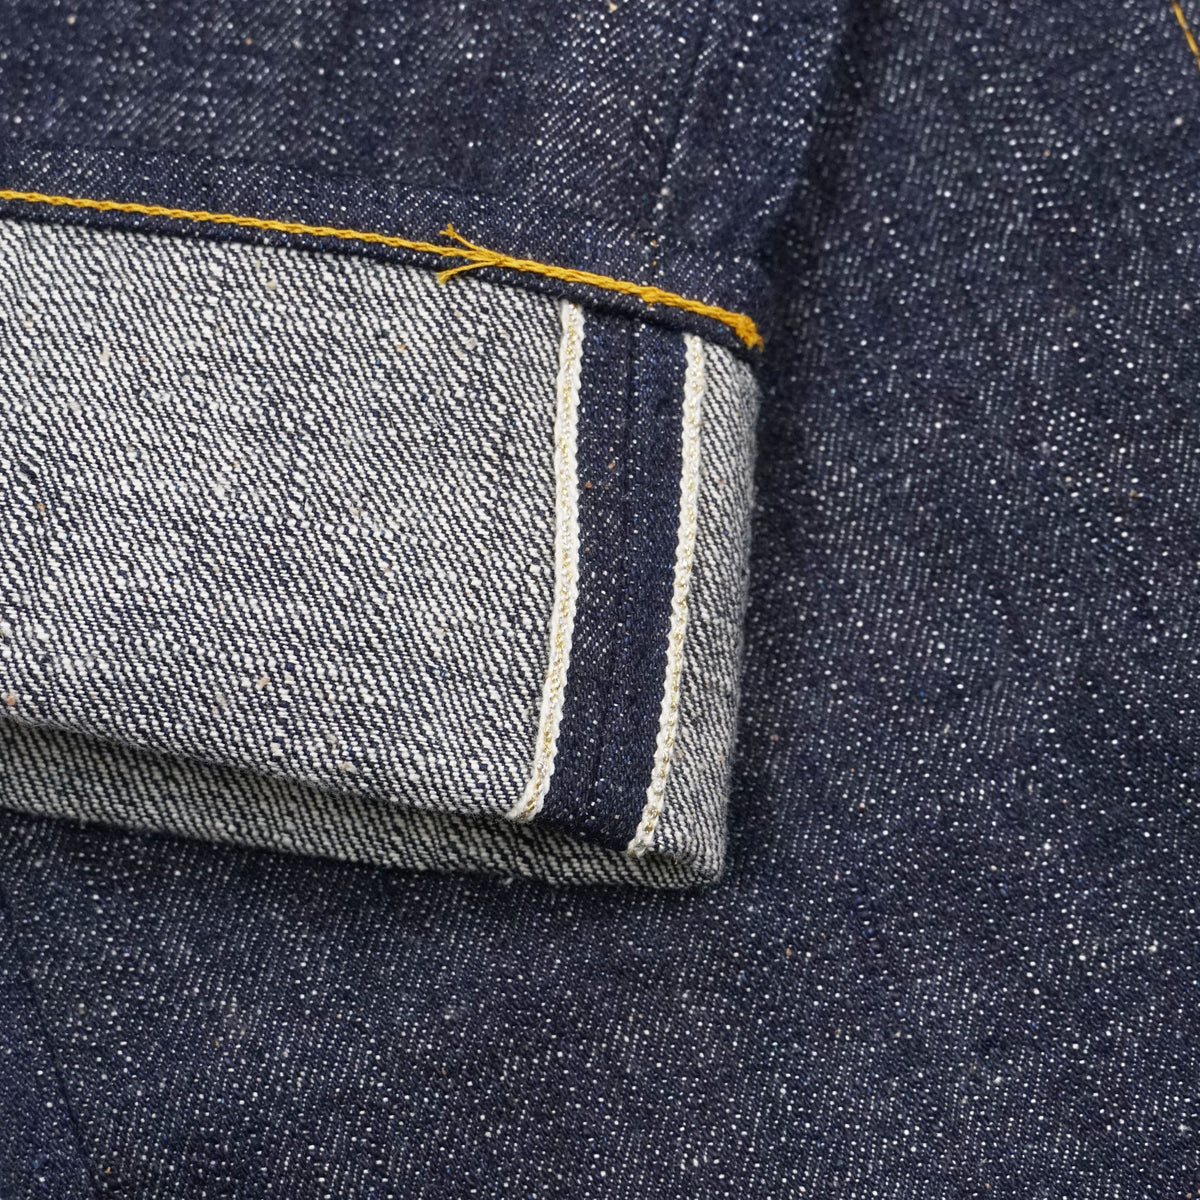 Samurai Jeans 17oz Japanese Cotton Project